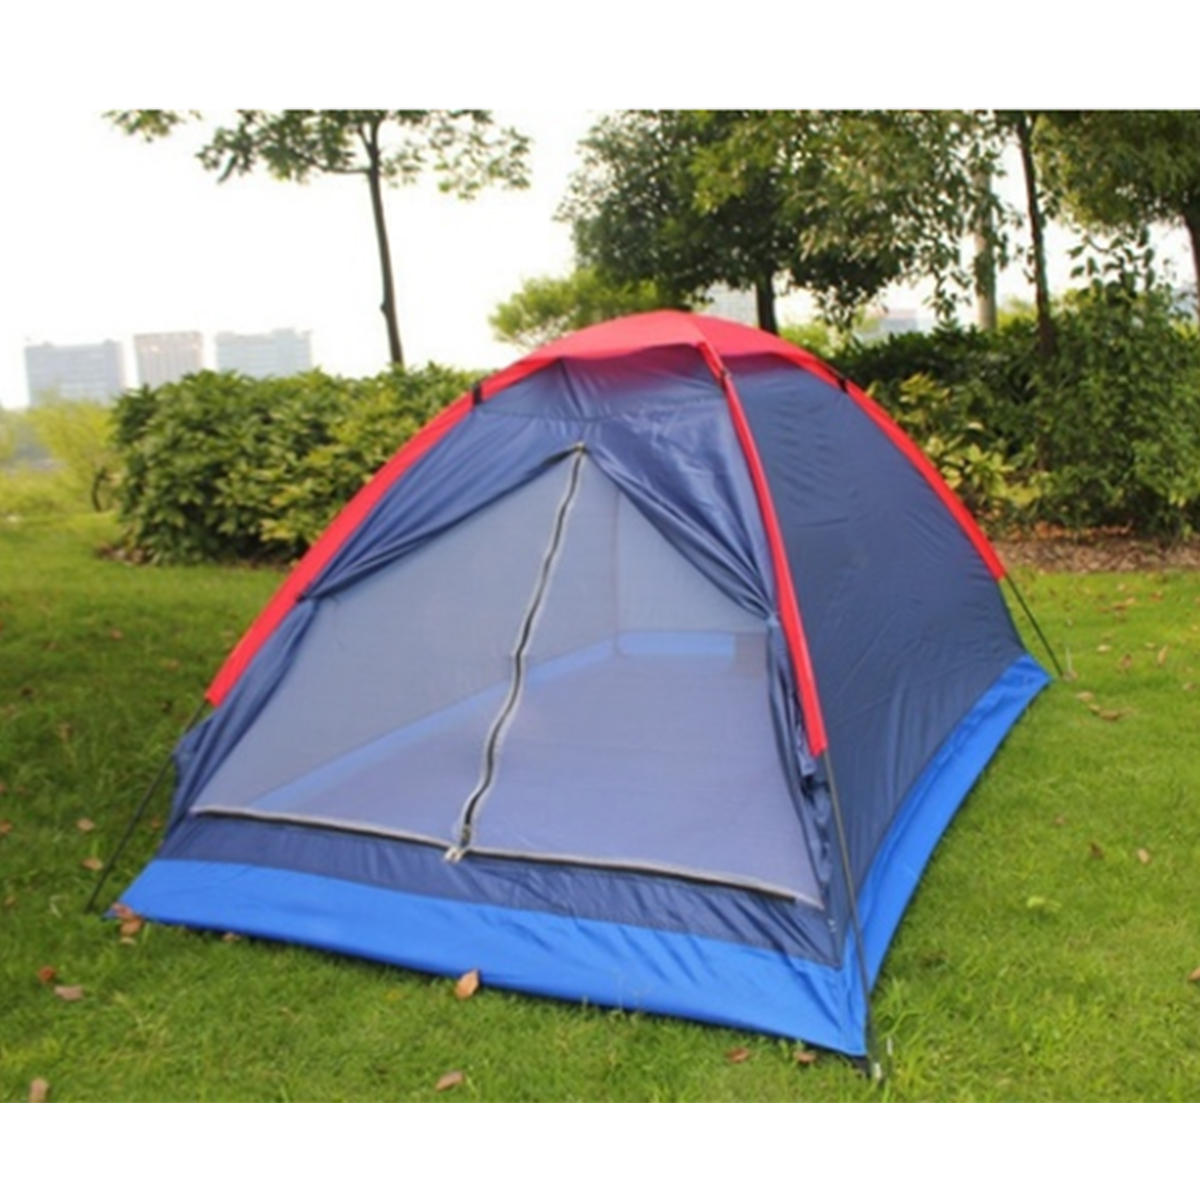 Двухместная палатка для кемпинга, однослойная, пляжная, на открытом воздухе, ветронепроницаемая, водонепроницаемая, тент-автомат, летний тент с сумкой случайного цвета.